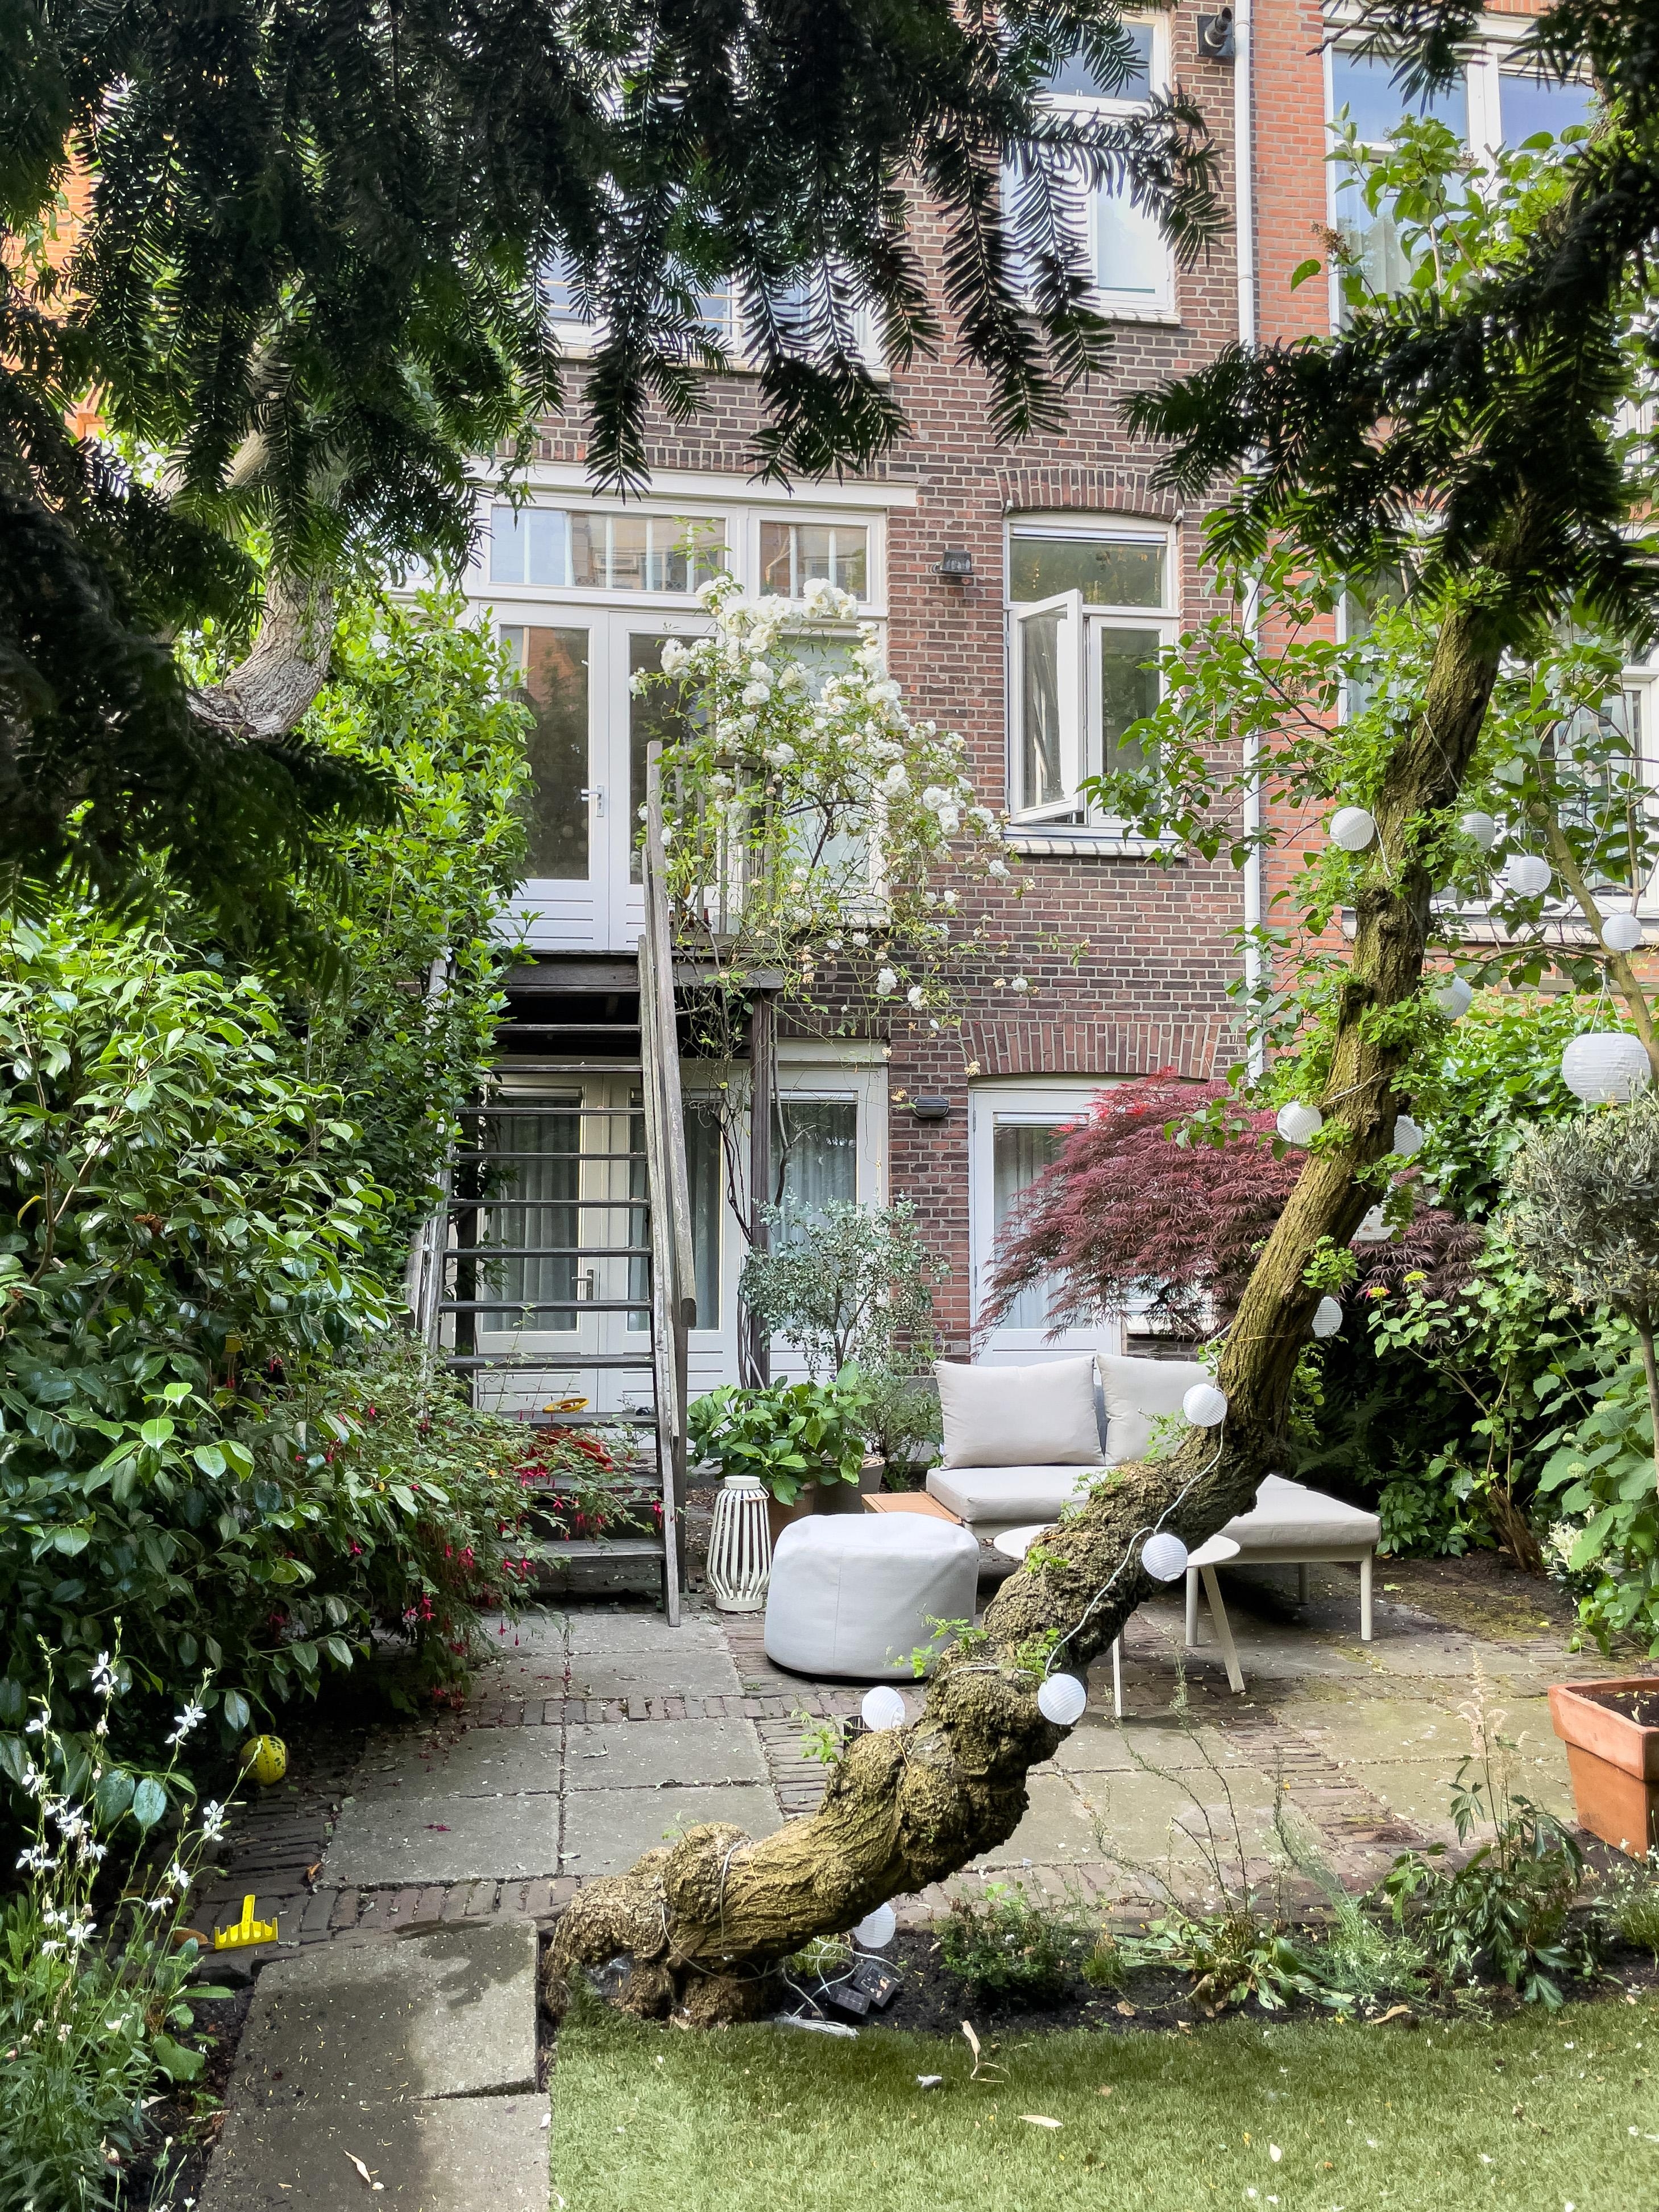 Garten Impressionen 🤍
#garten #gartenliebe #klinker #aussenansicht #stadtwohnung #terrasse #niederlanden #innenhof